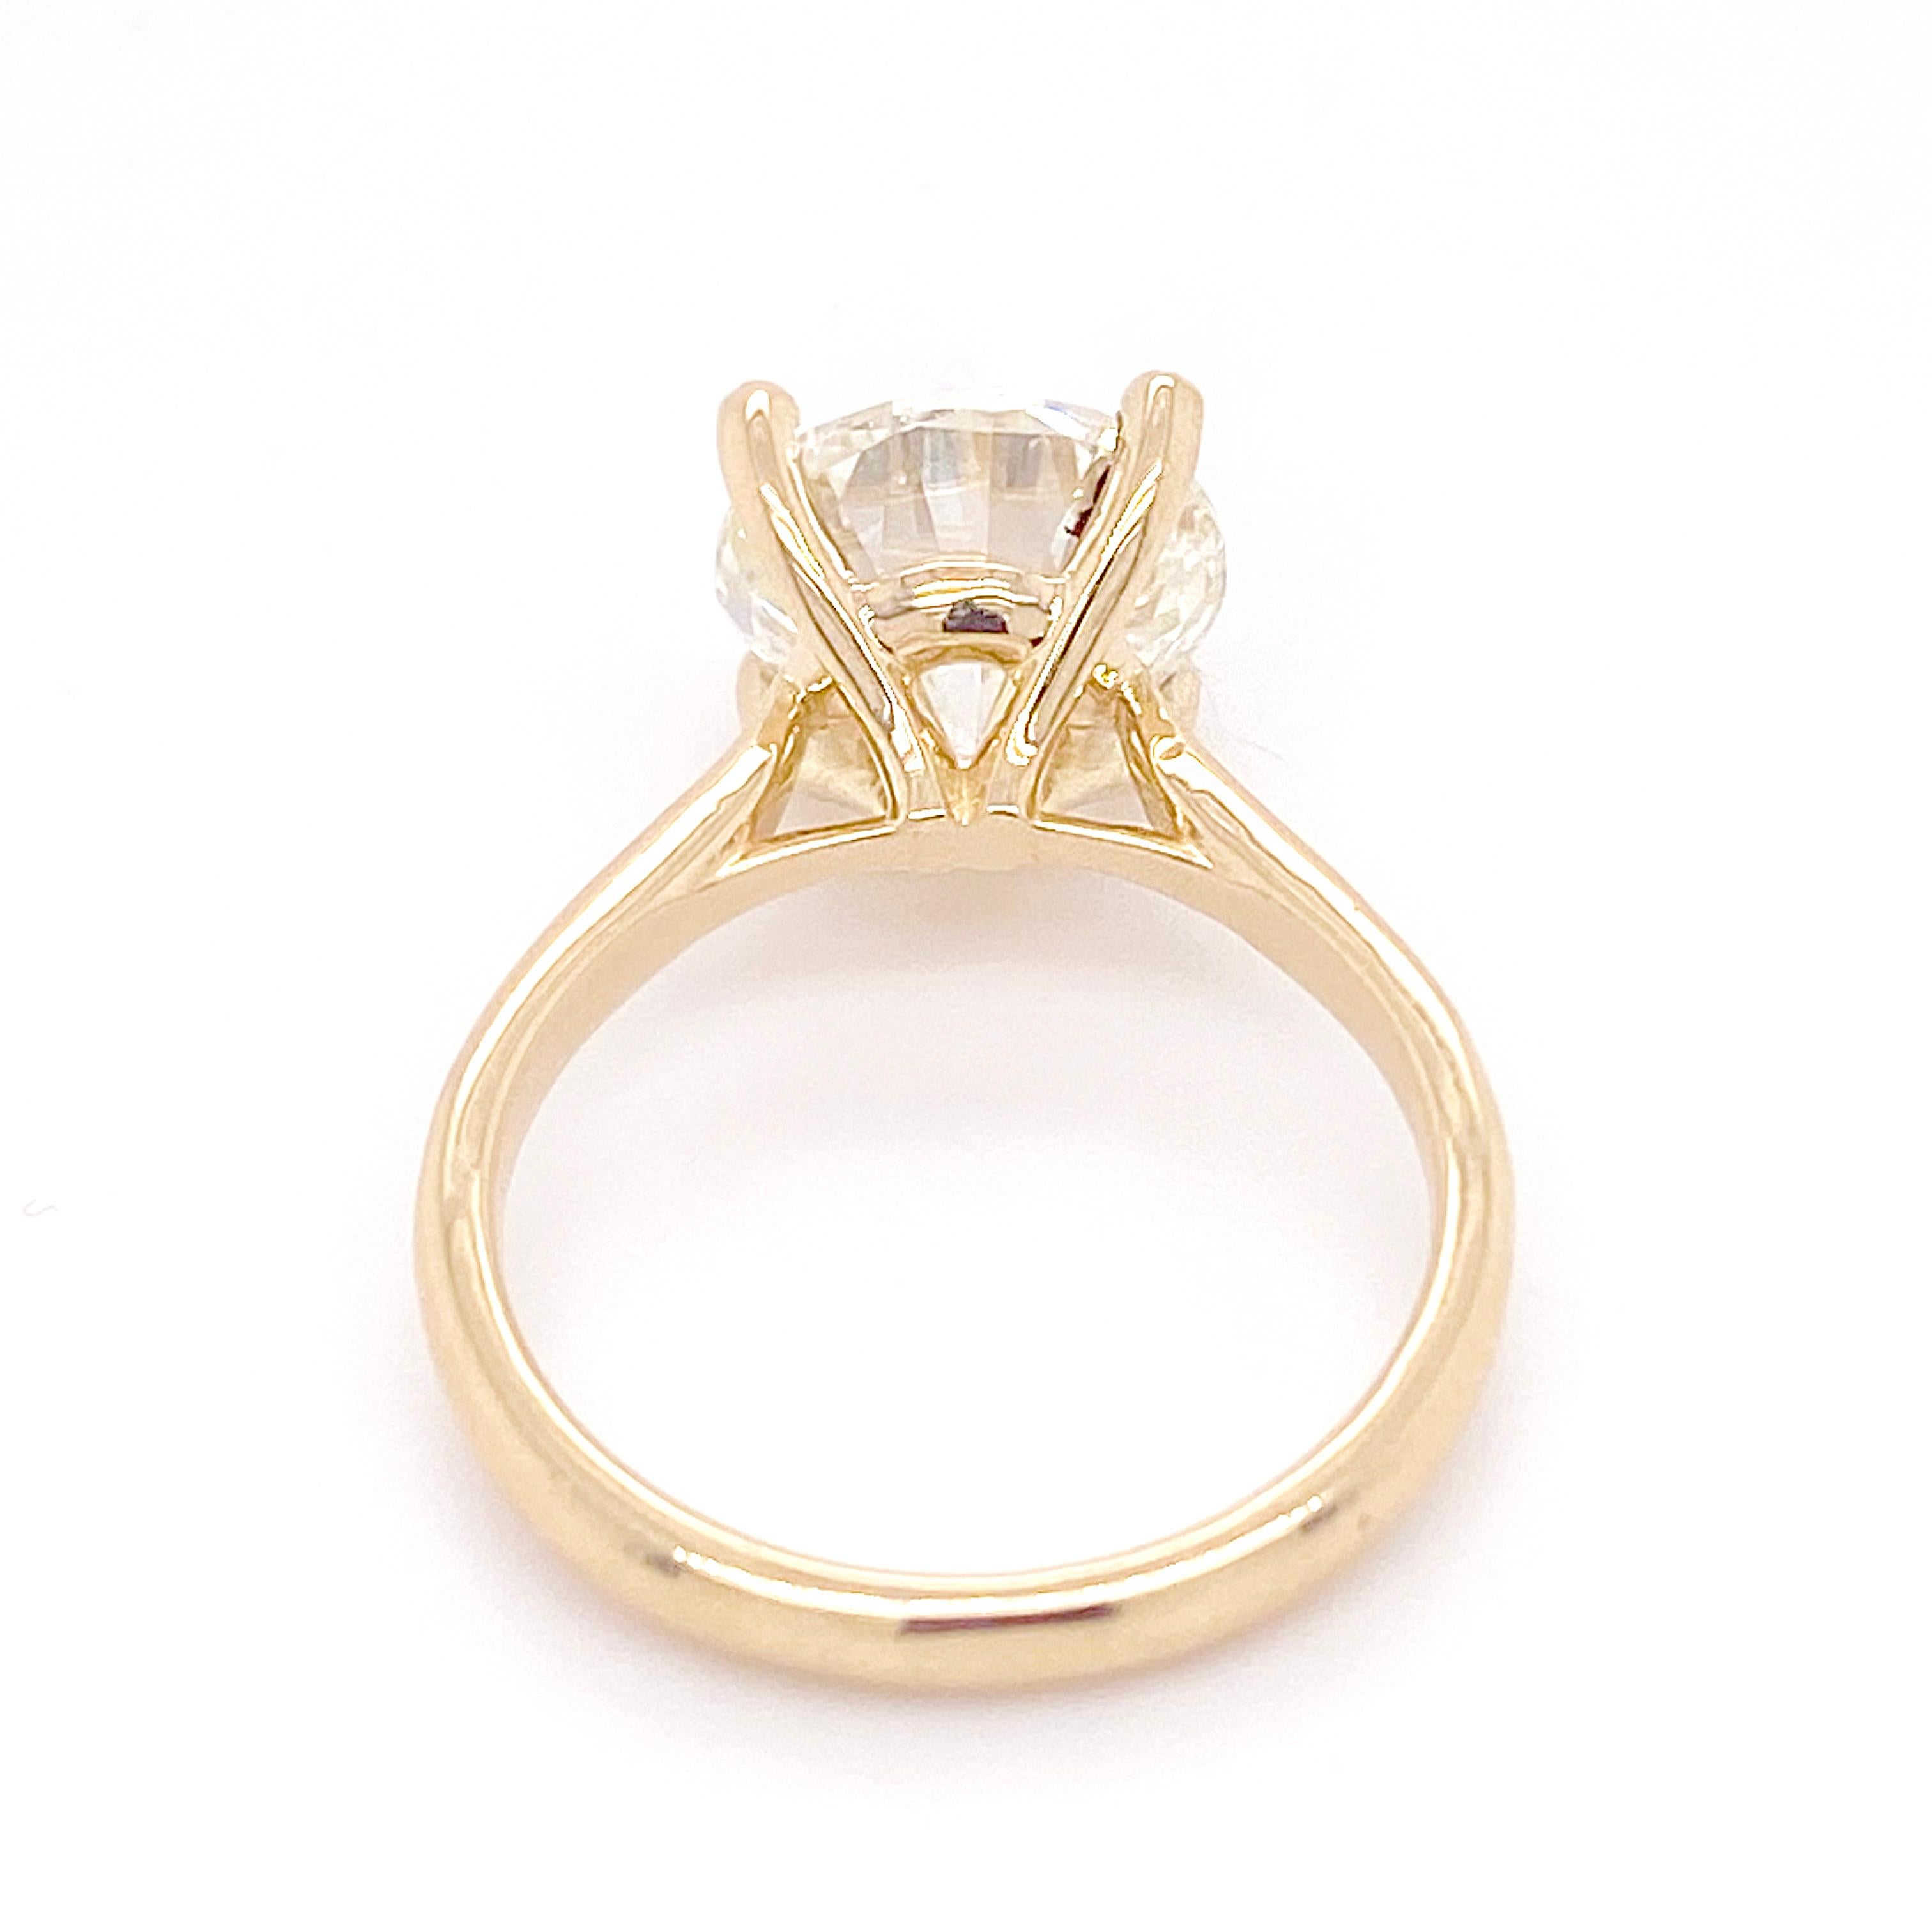 4 carat solitaire diamond ring